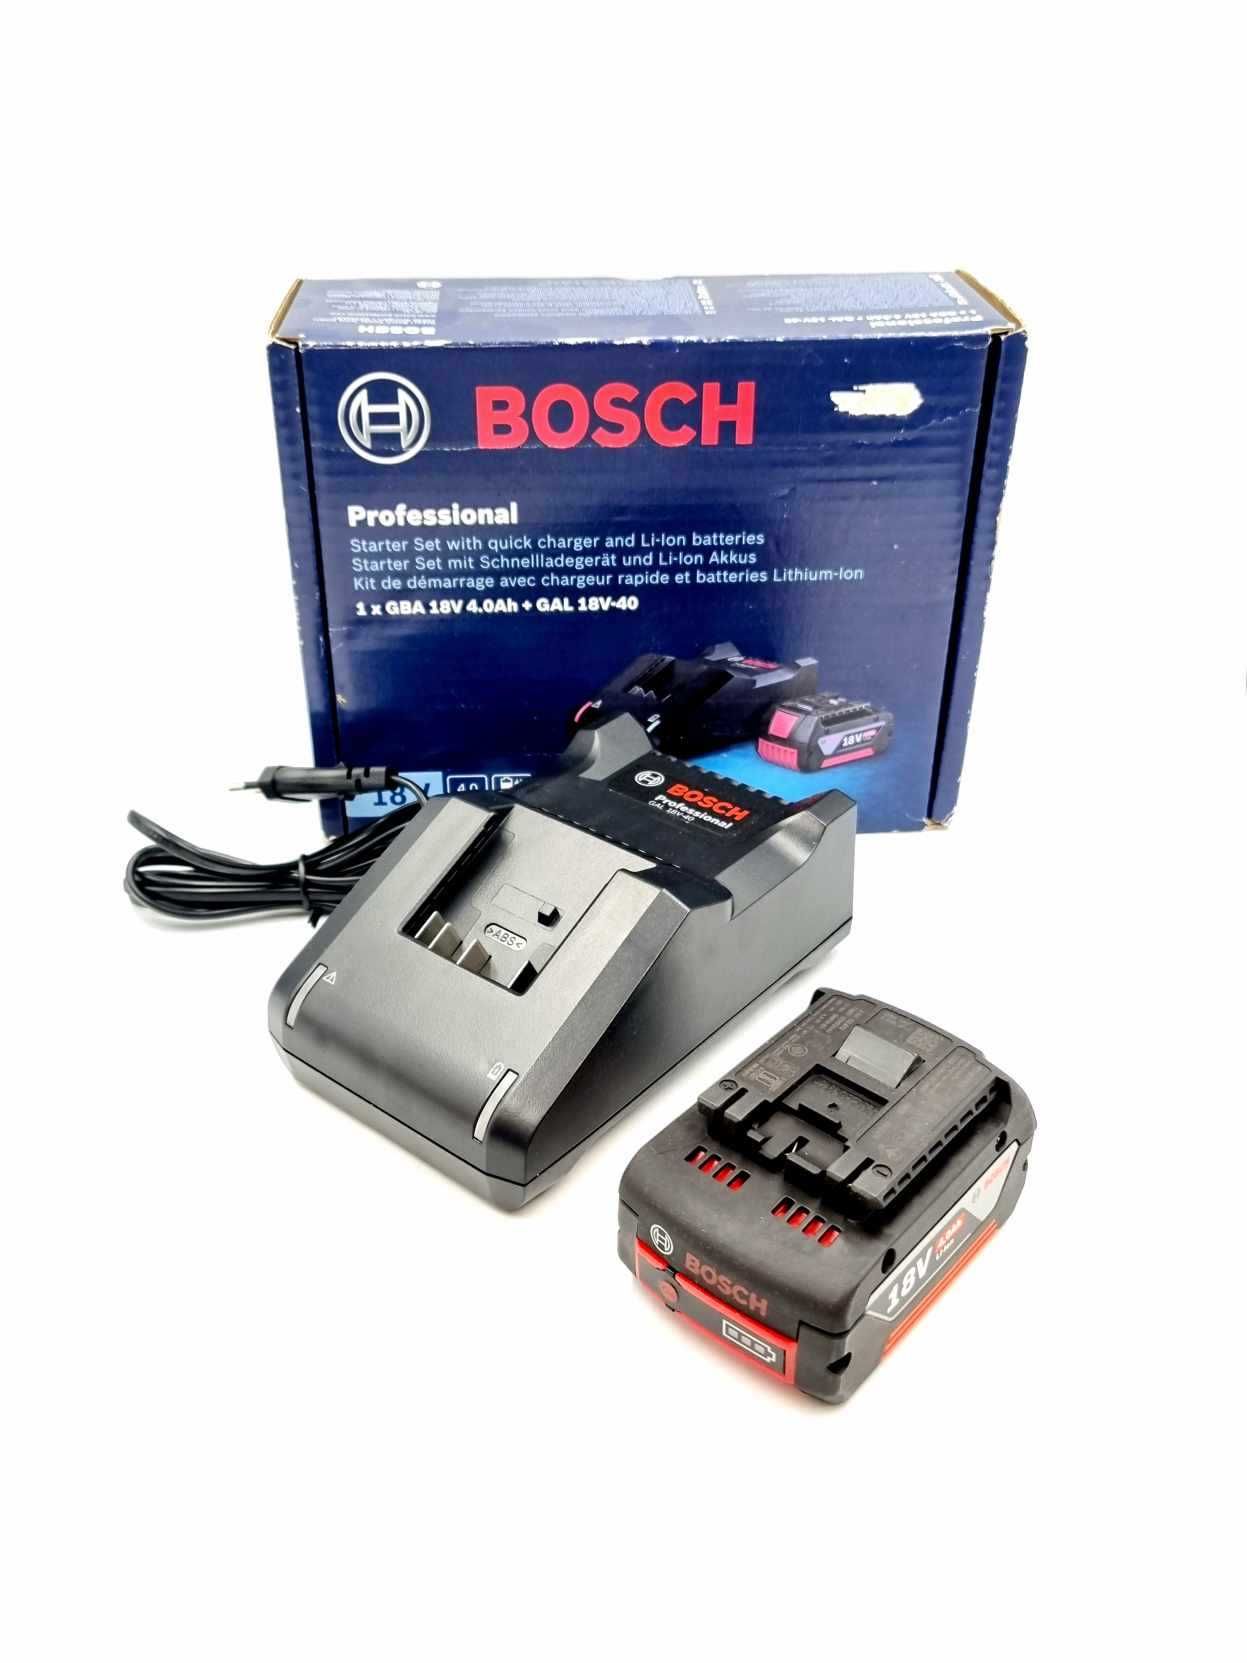 NOWY Bosch Professional Akumulator GBA 18V 4.0Ah Ładowarka GAL 18V-40